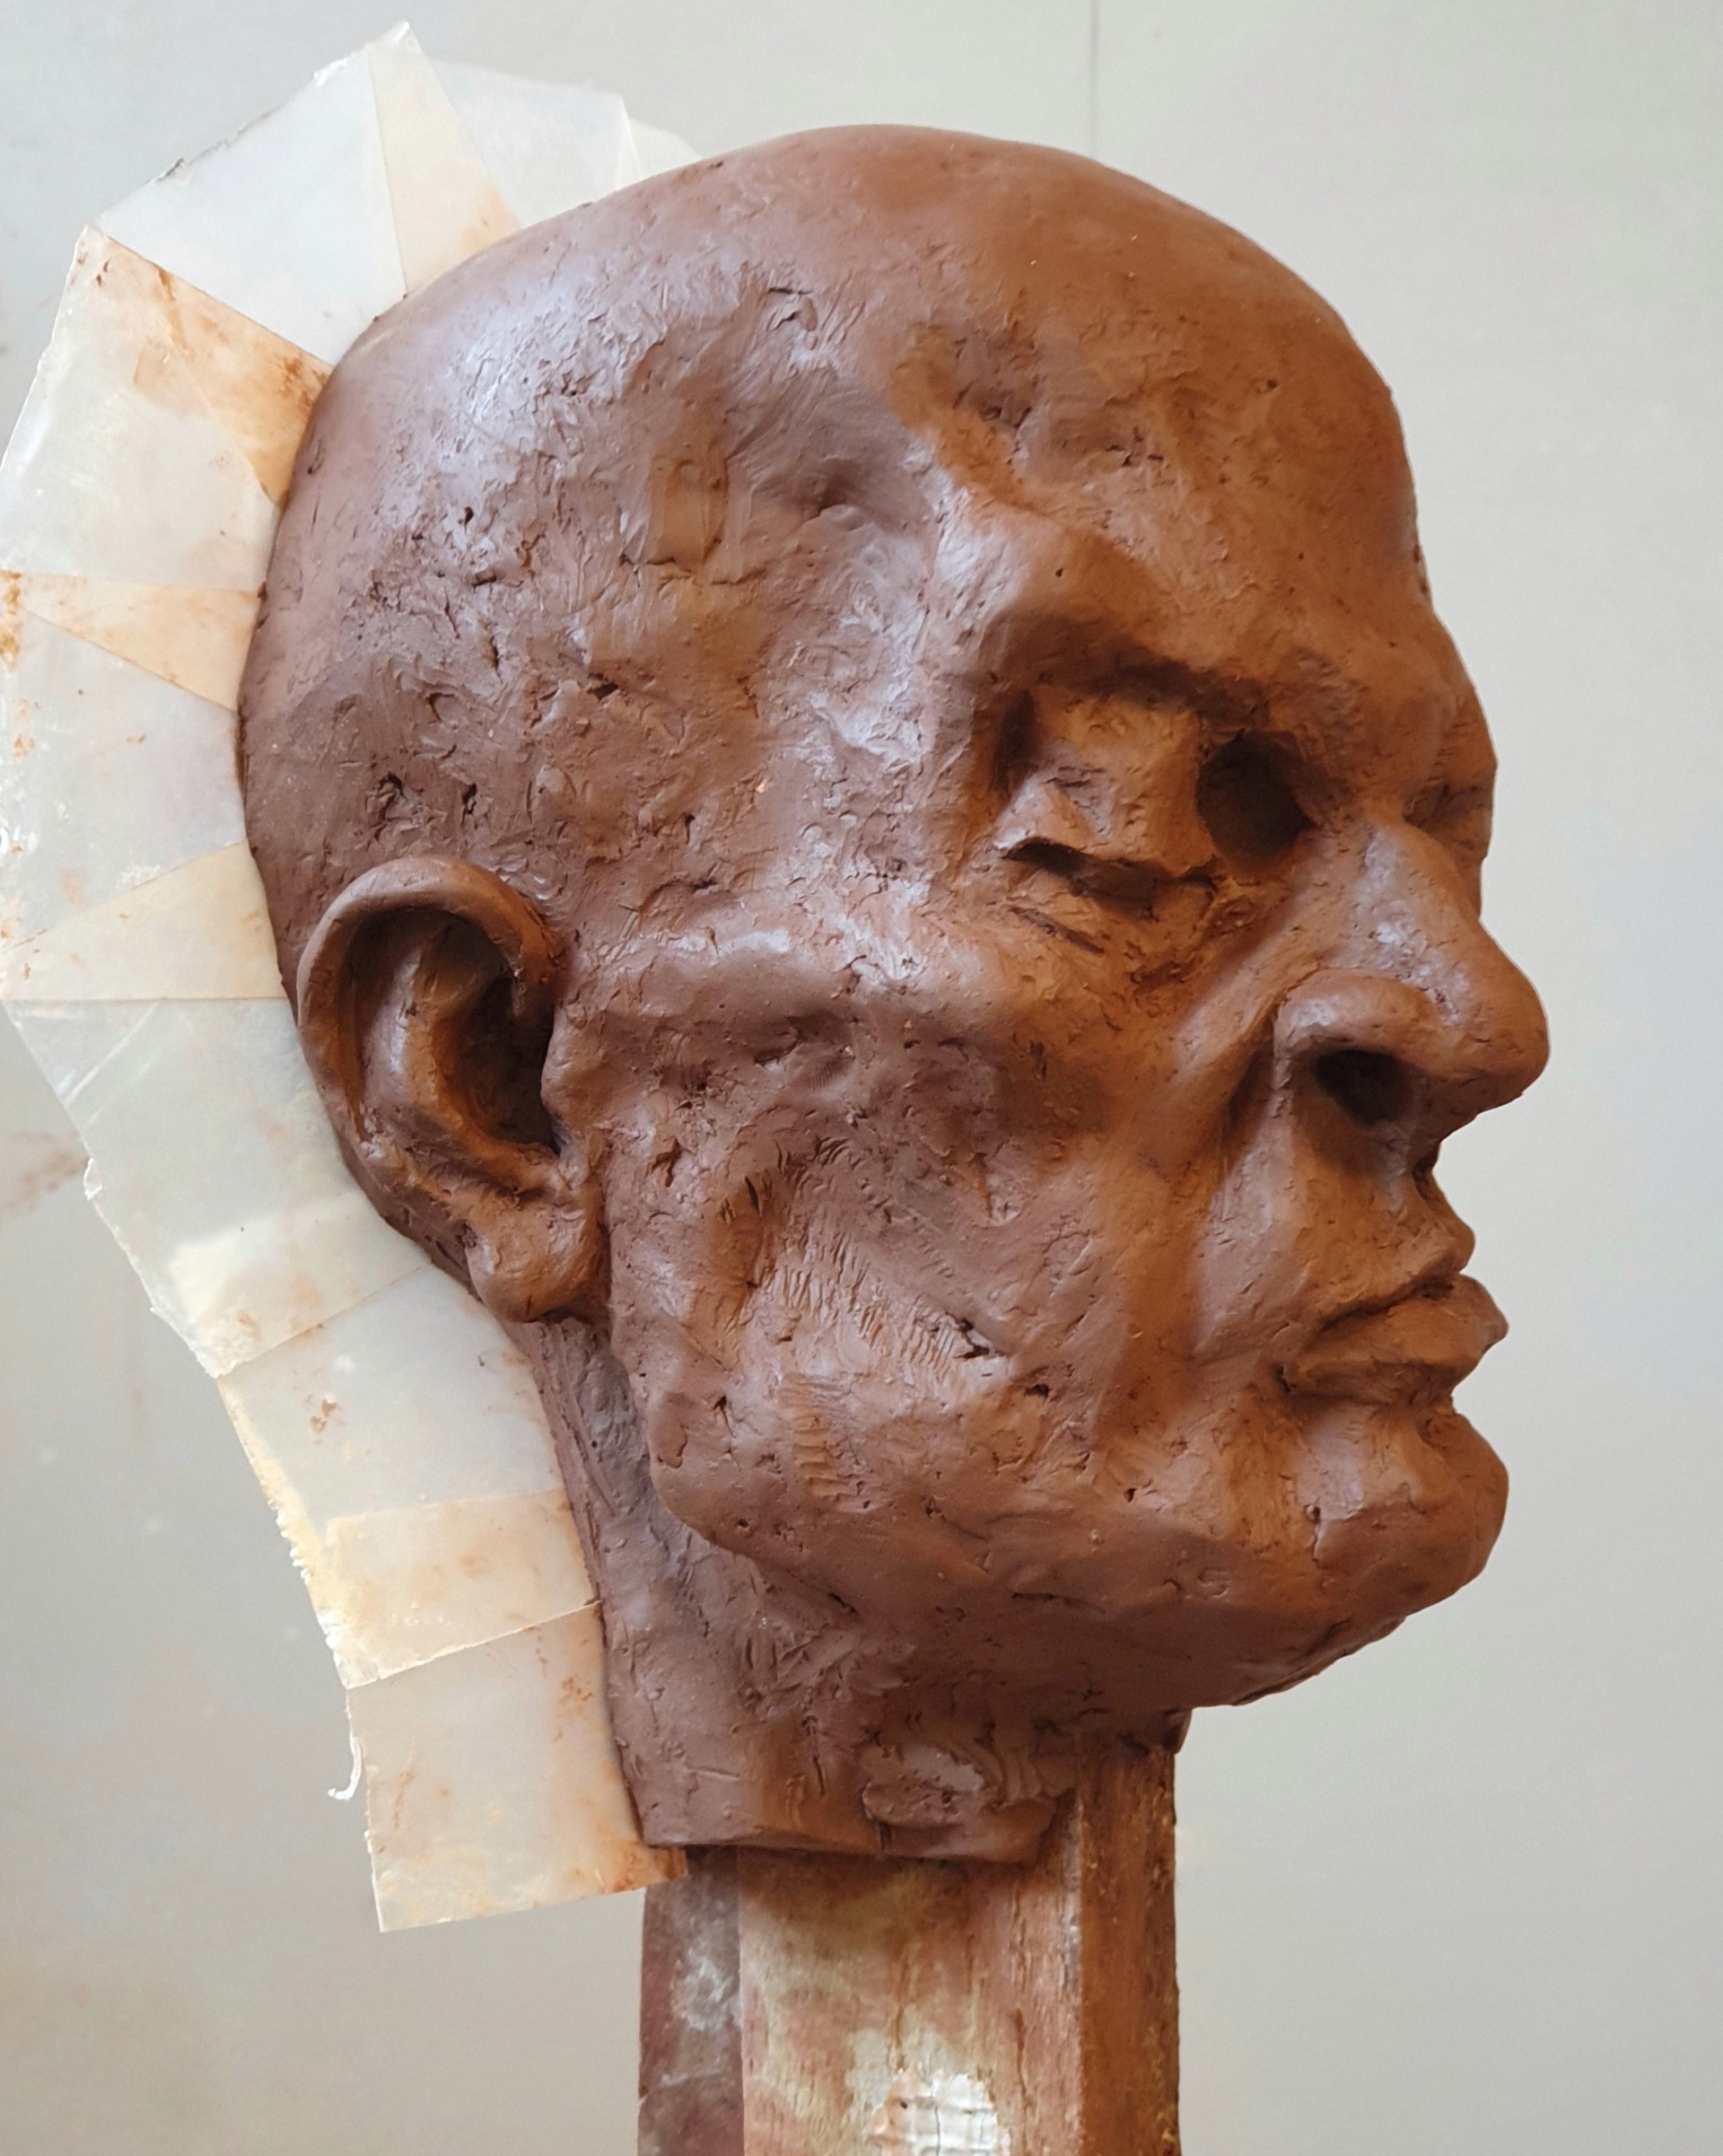 Portret gliniany przedstawiający łysą, groteskową postać o skrzywionej wgrymasie twarzy i zmrużonych oczach.